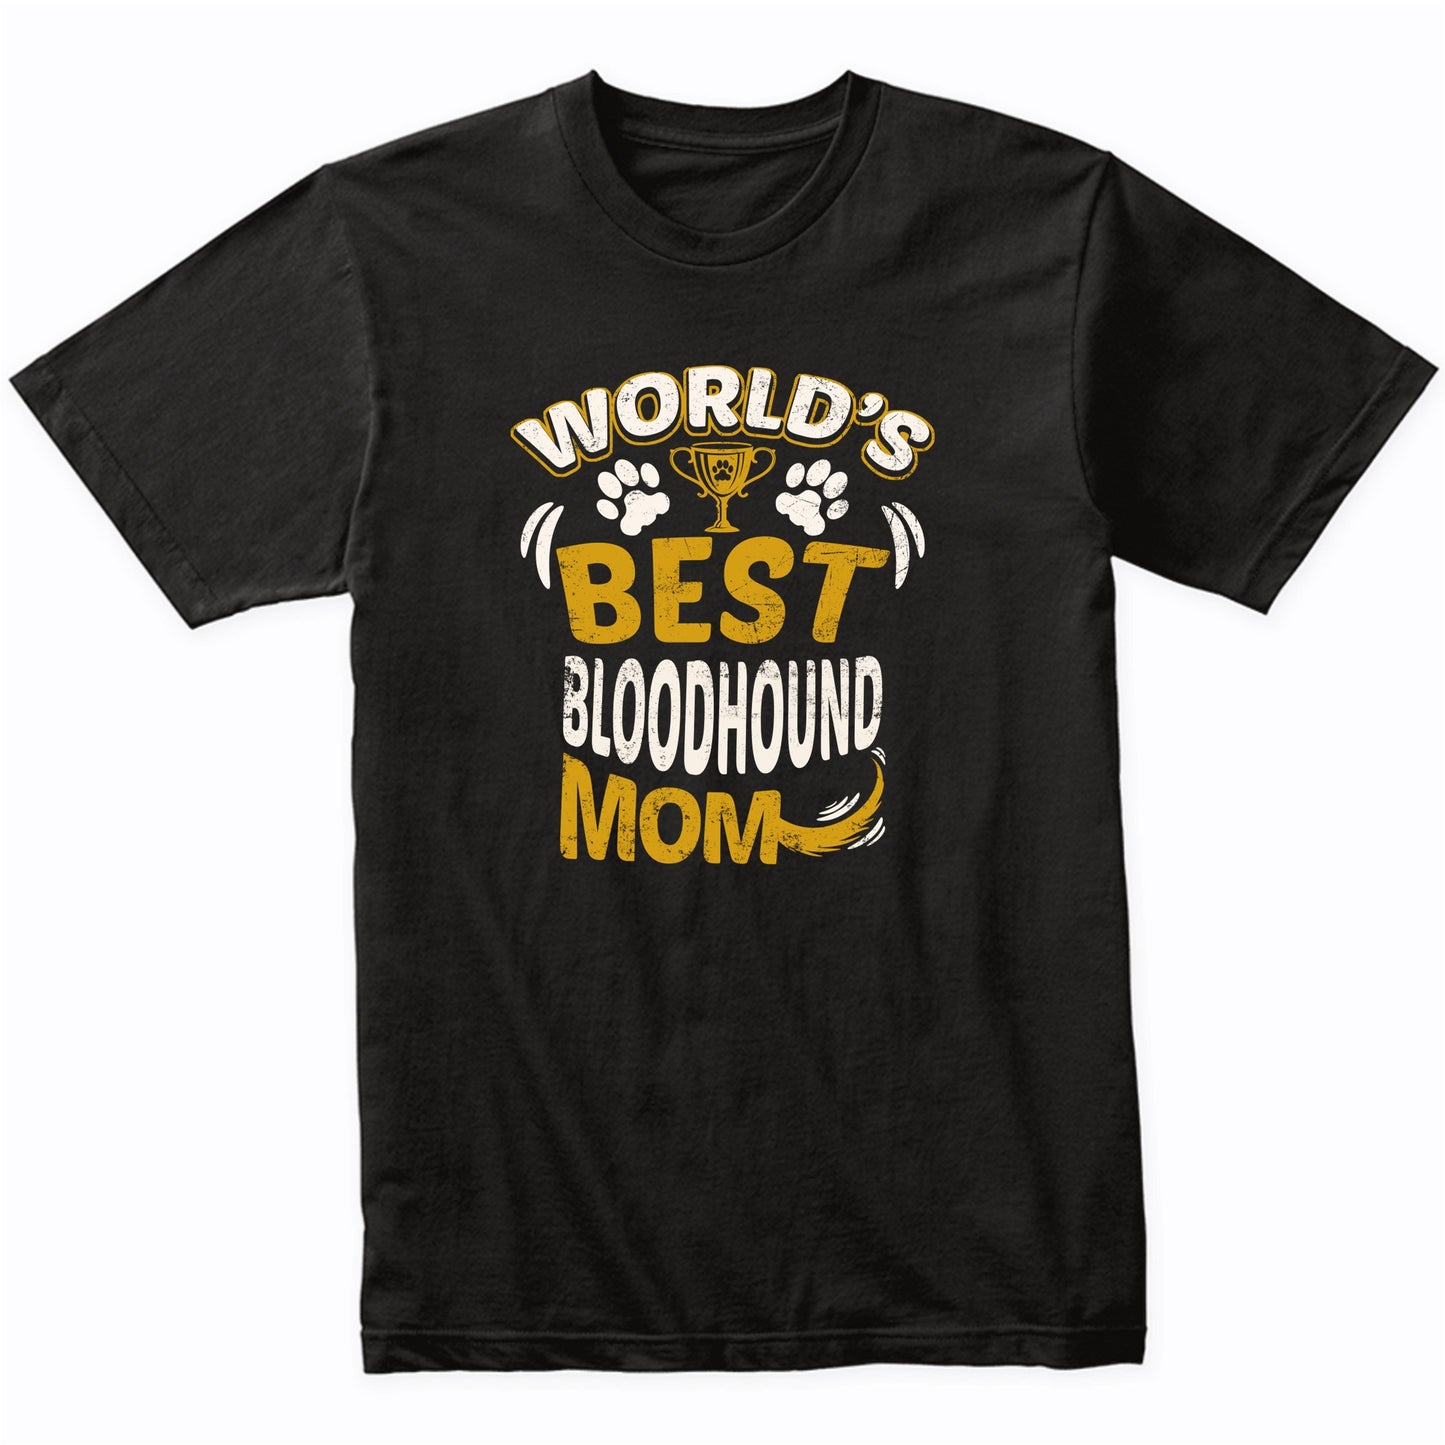 World's Best Bloodhound Mom Graphic T-Shirt